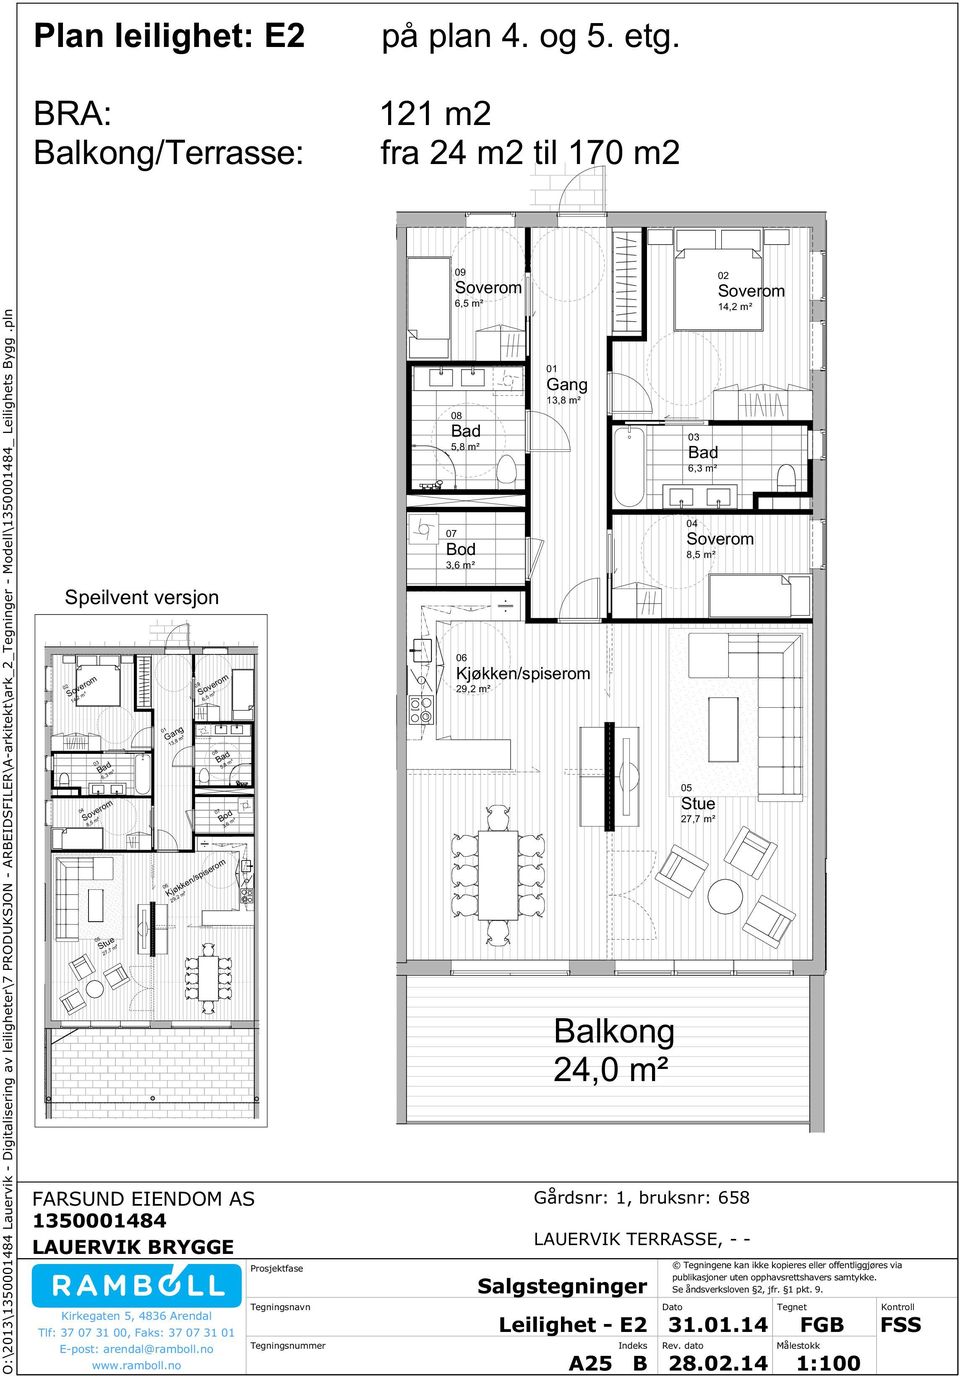 121 m2 fra 24 m2 til 170 m2 09 6,5 m² 14,2 m² 5,8 m² 13,8 m² 6,3 m² 3,6 m² 8,5 m² Speilvent versjon 14,2 m² 09 6,5 m²